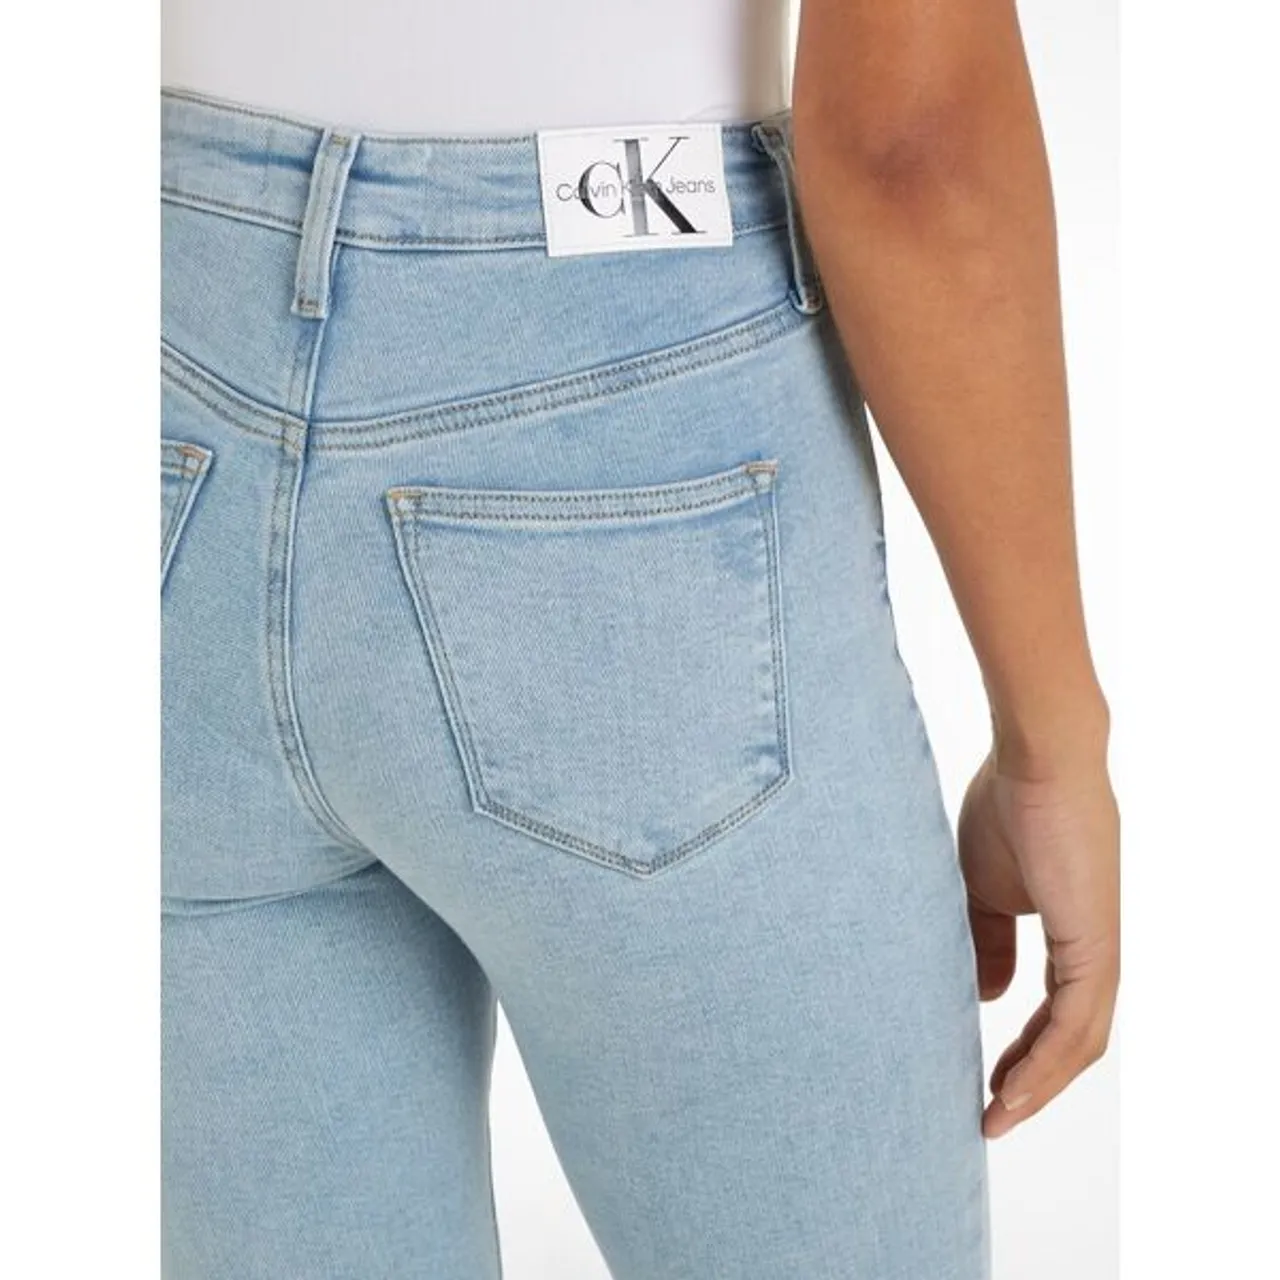 Skinny-fit-Jeans CALVIN KLEIN JEANS "HIGH RISE SUPER SKINNY ANKLE" Gr. 30, N-Gr, blau (denim light) Damen Jeans Röhrenjeans in klassischer 5-Pocket-Fo...